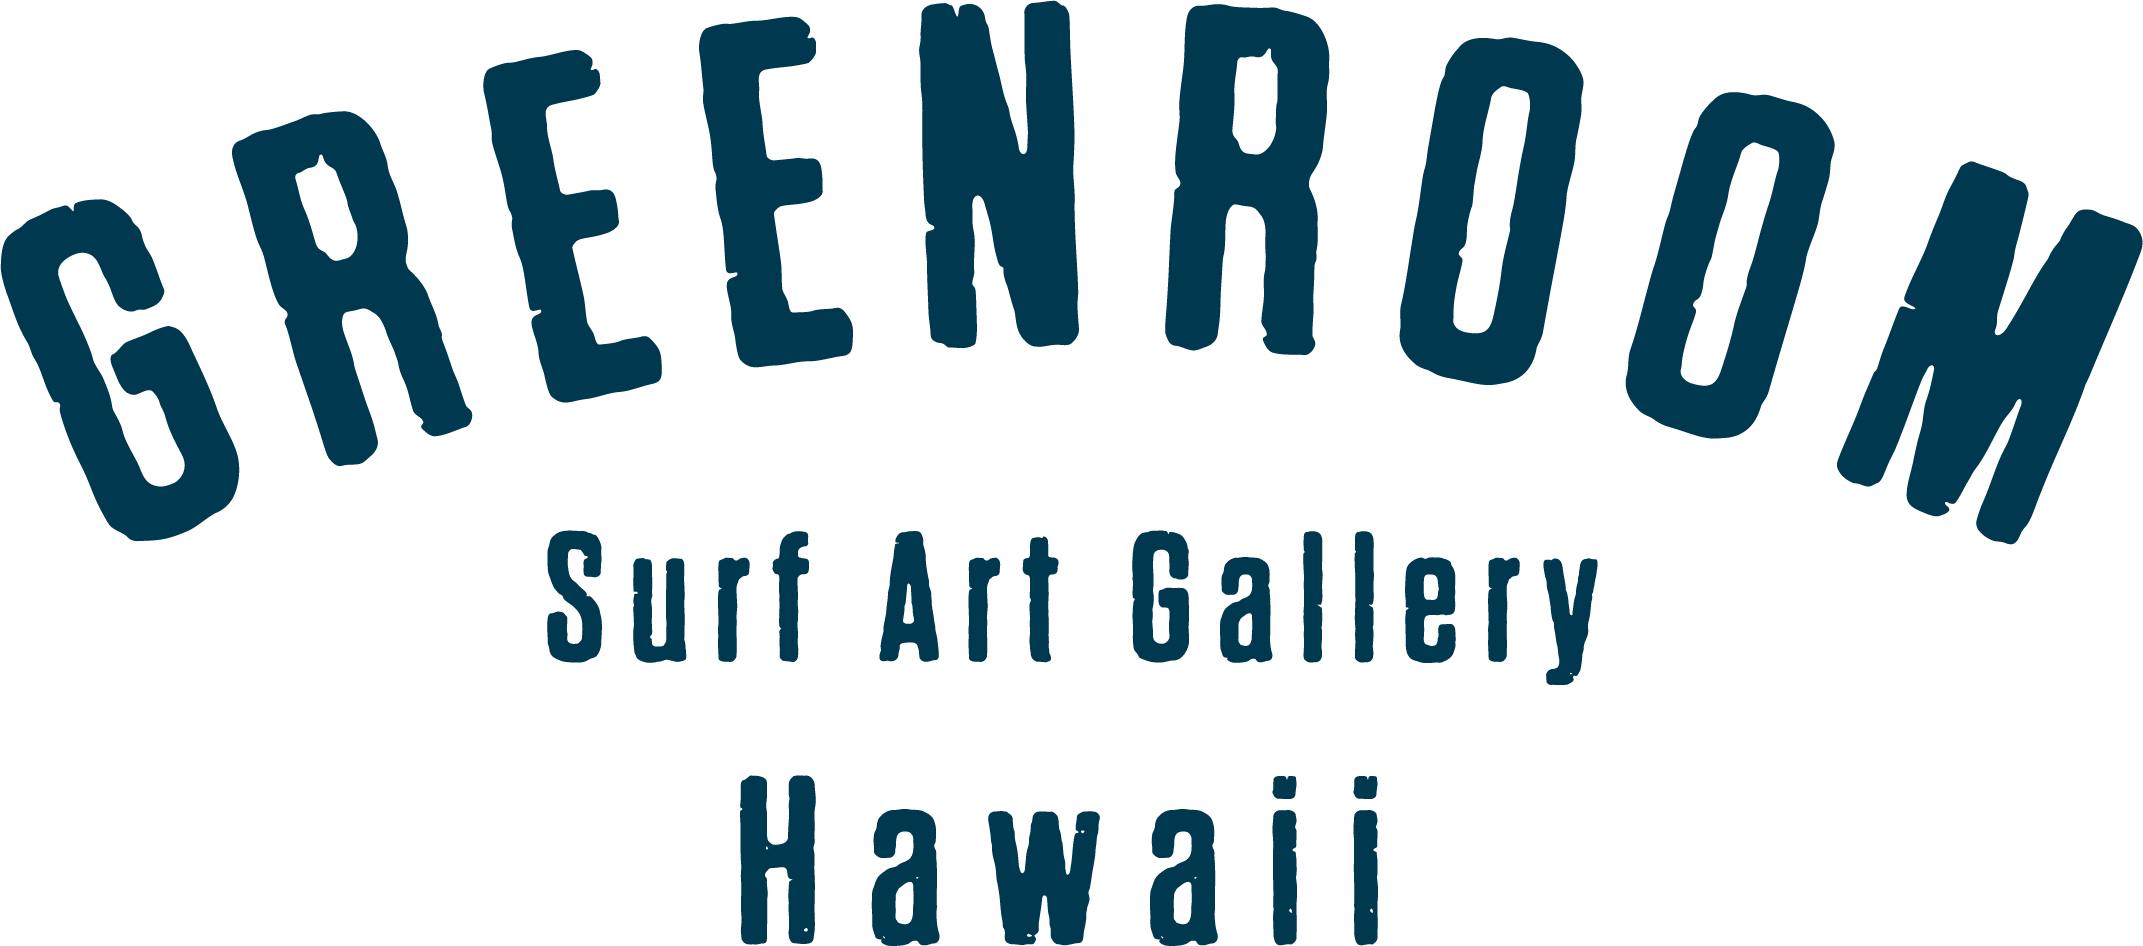 Greenroom Gallery Hawaii Green Room Hawaii